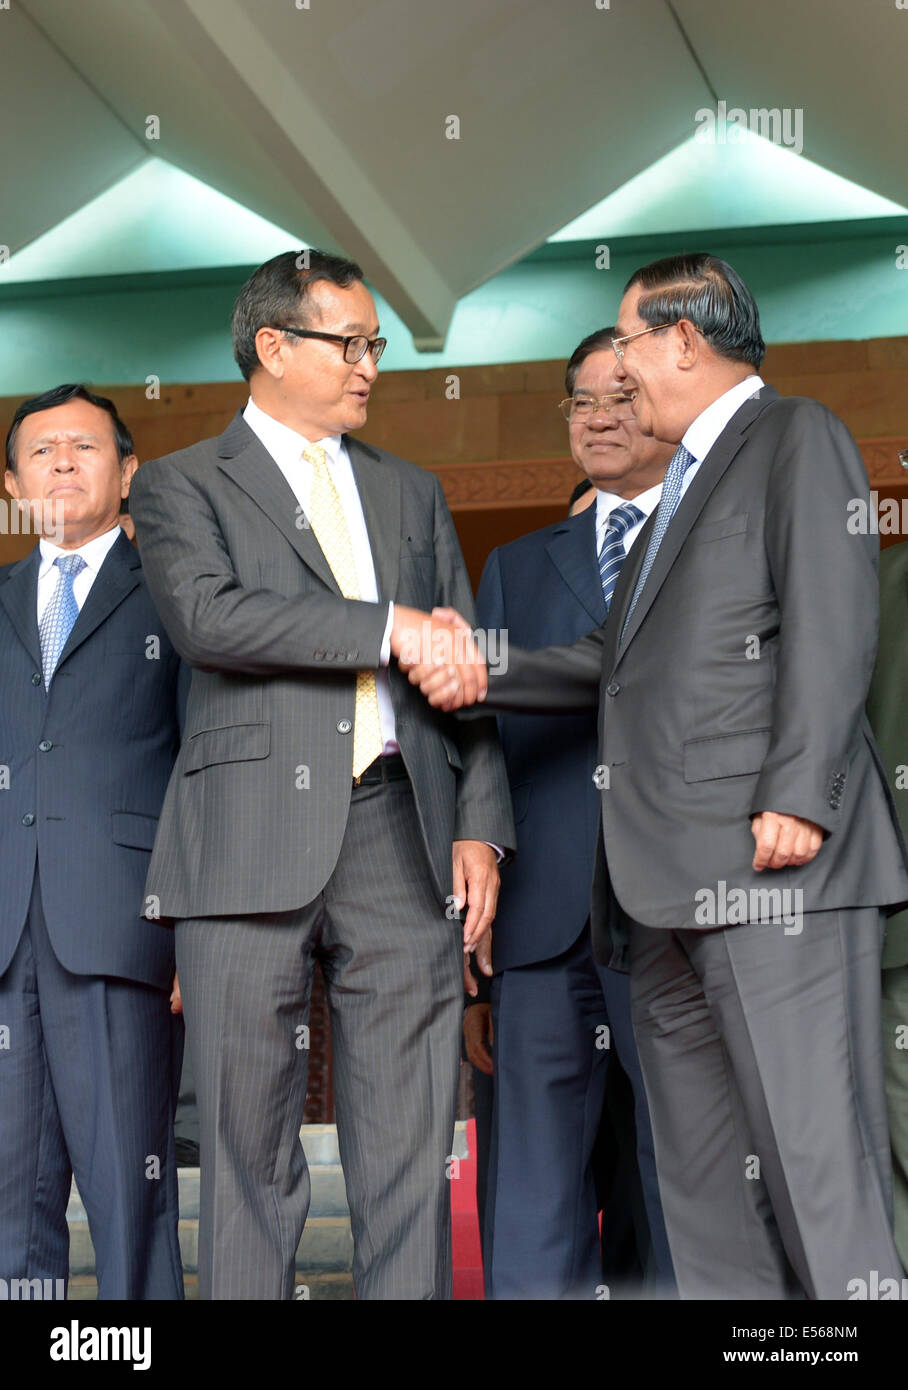 Phnom Penh, Camboya. El 22 de julio de 2014. Primer Ministro de Camboya Hun Sen (R, delantero) se da la mano con Sam Rainsy (L, delantero), Presidente de la oposición Partido Rescate Nacional de Camboya, en Phnom Penh, Camboya, 22 de julio de 2014. La oposición del Partido Rescate Nacional de Camboya (CNRP) el martes acordaron poner fin a sus largos años de boicotear el parlamento después de que el partido gobernante acordó reformas electorales, el reparto de poder en el parlamento y una licencia de TV. Crédito: Sovannara/Xinhua/Alamy Live News Foto de stock